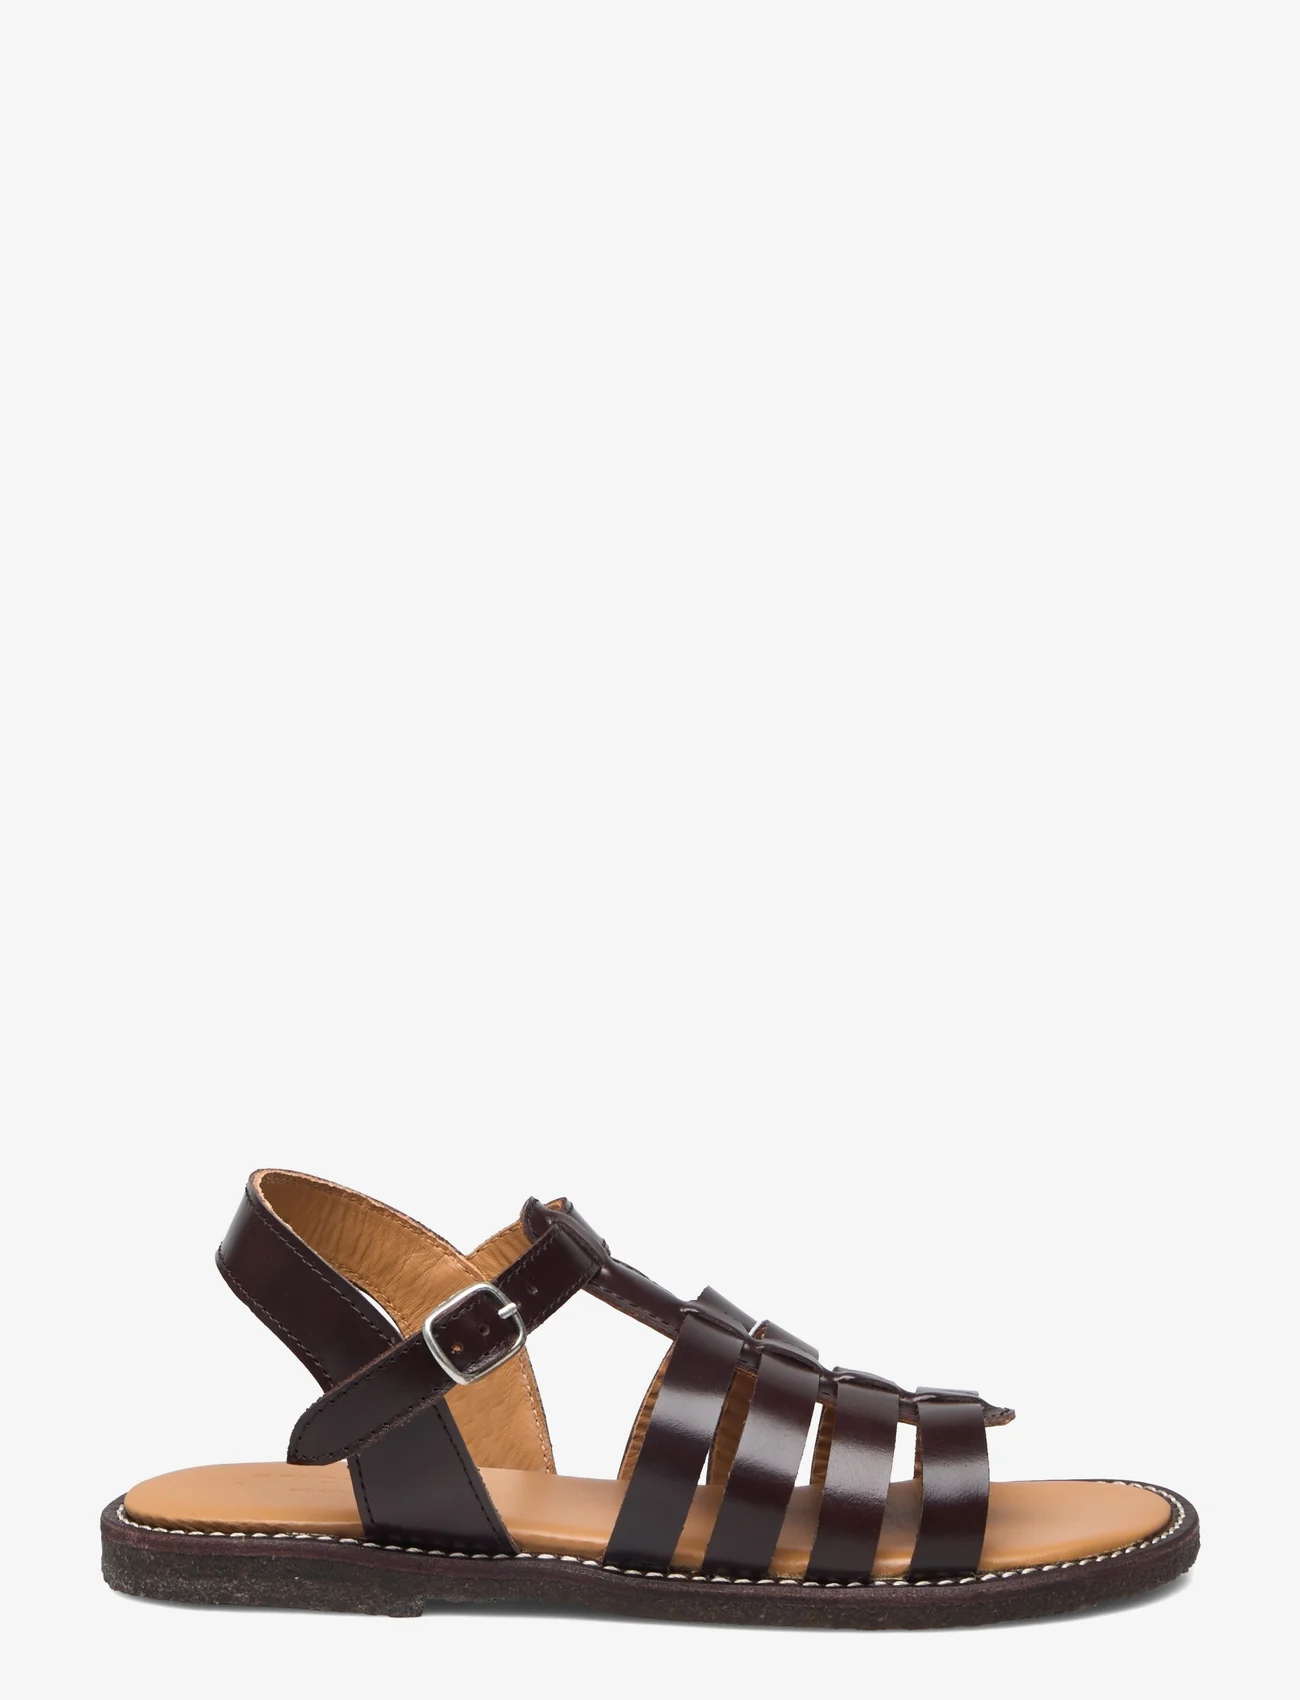 ANGULUS - Sandals - flat - open toe - op - sandals - 1836 dark brown - 1